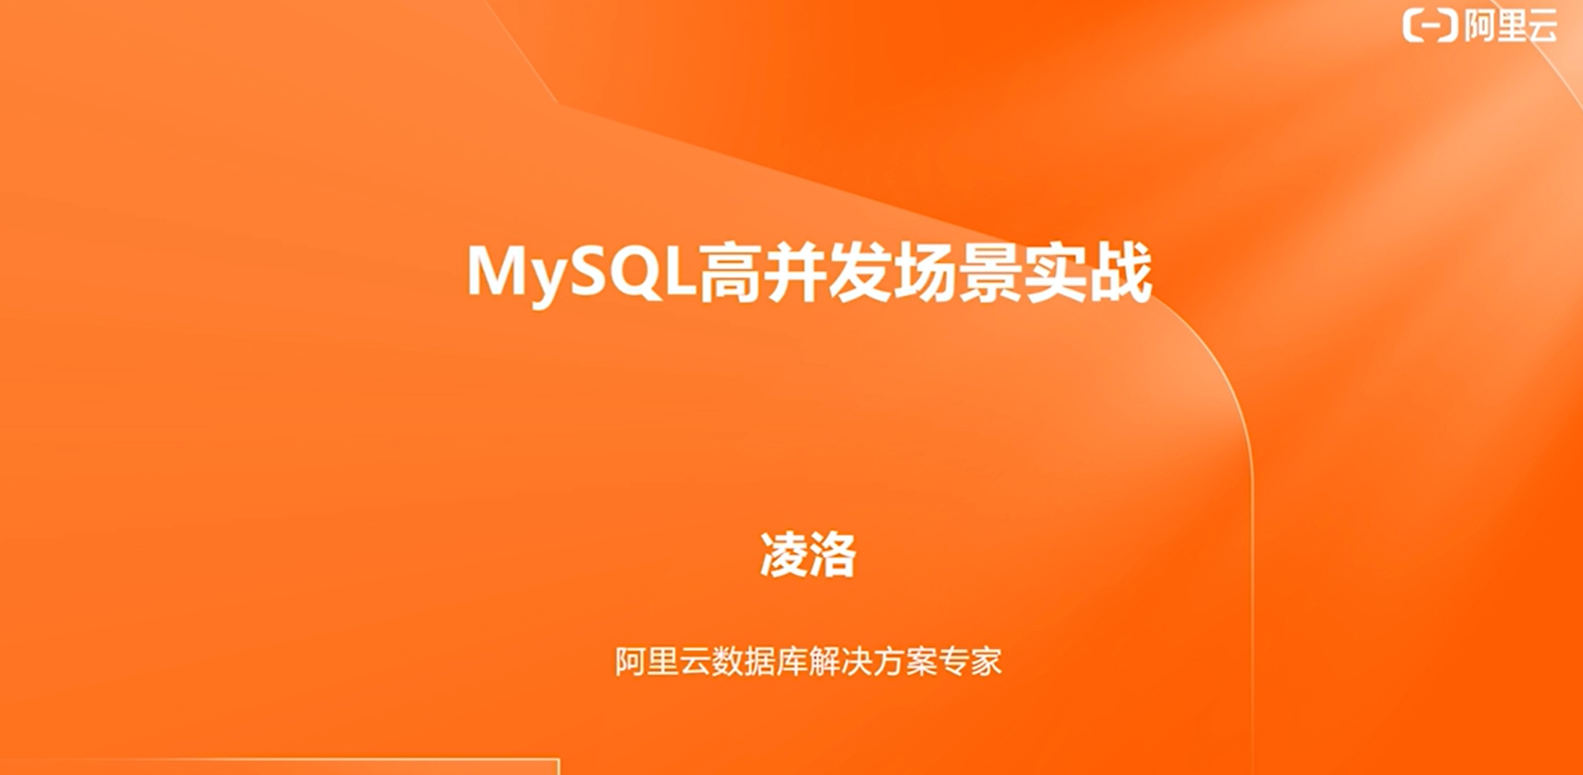 【七天深入MySQL实战营】Day2 MySQL 高并发场景实战 【视频地址】